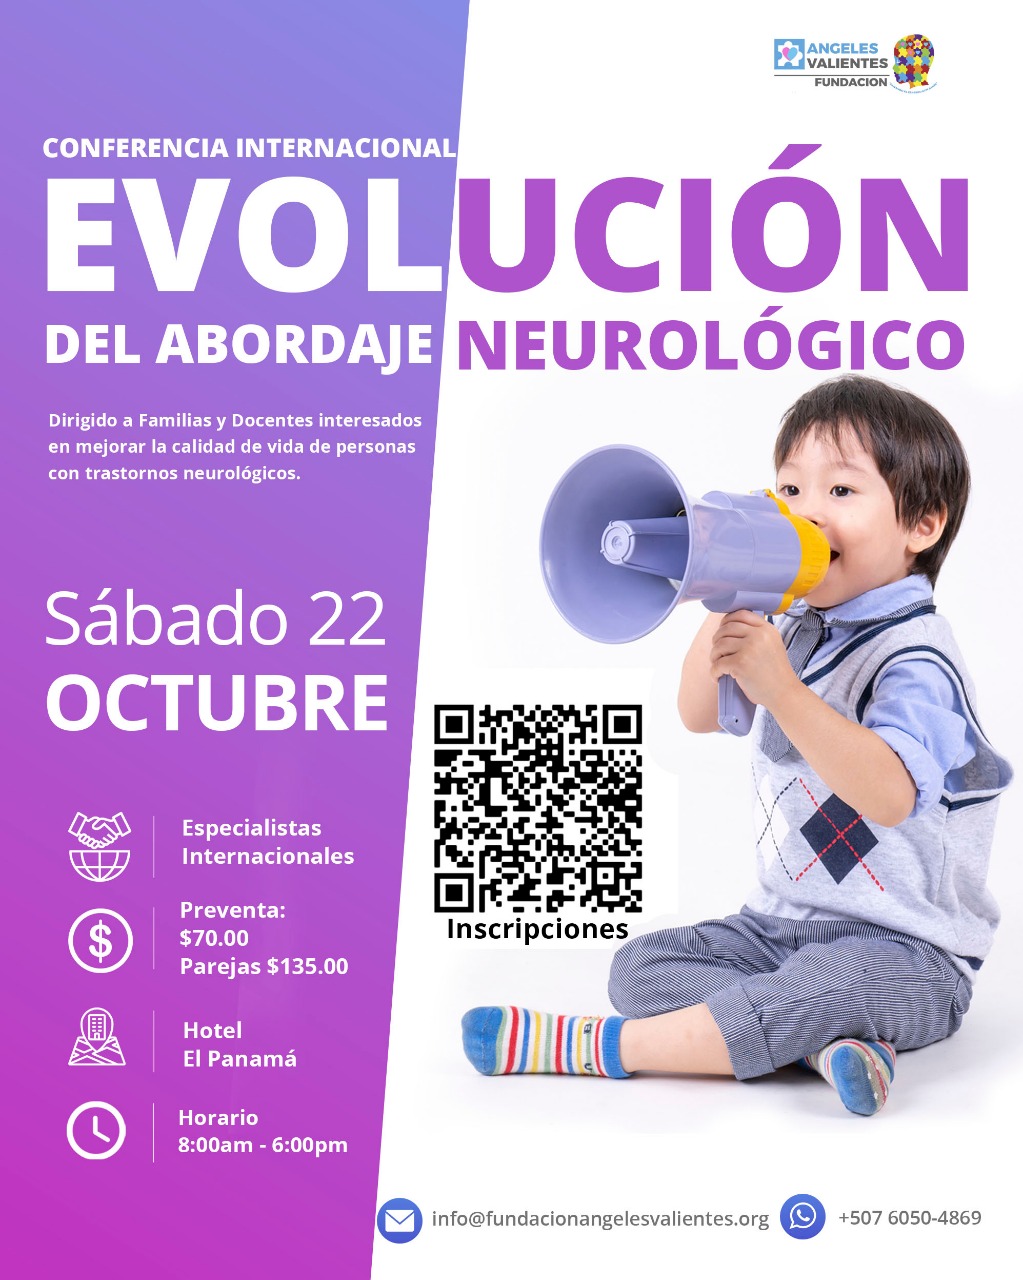 Conferencia Internacional de la Fundación Ángeles Valientes: “Evolución del Abordaje Neurológico”